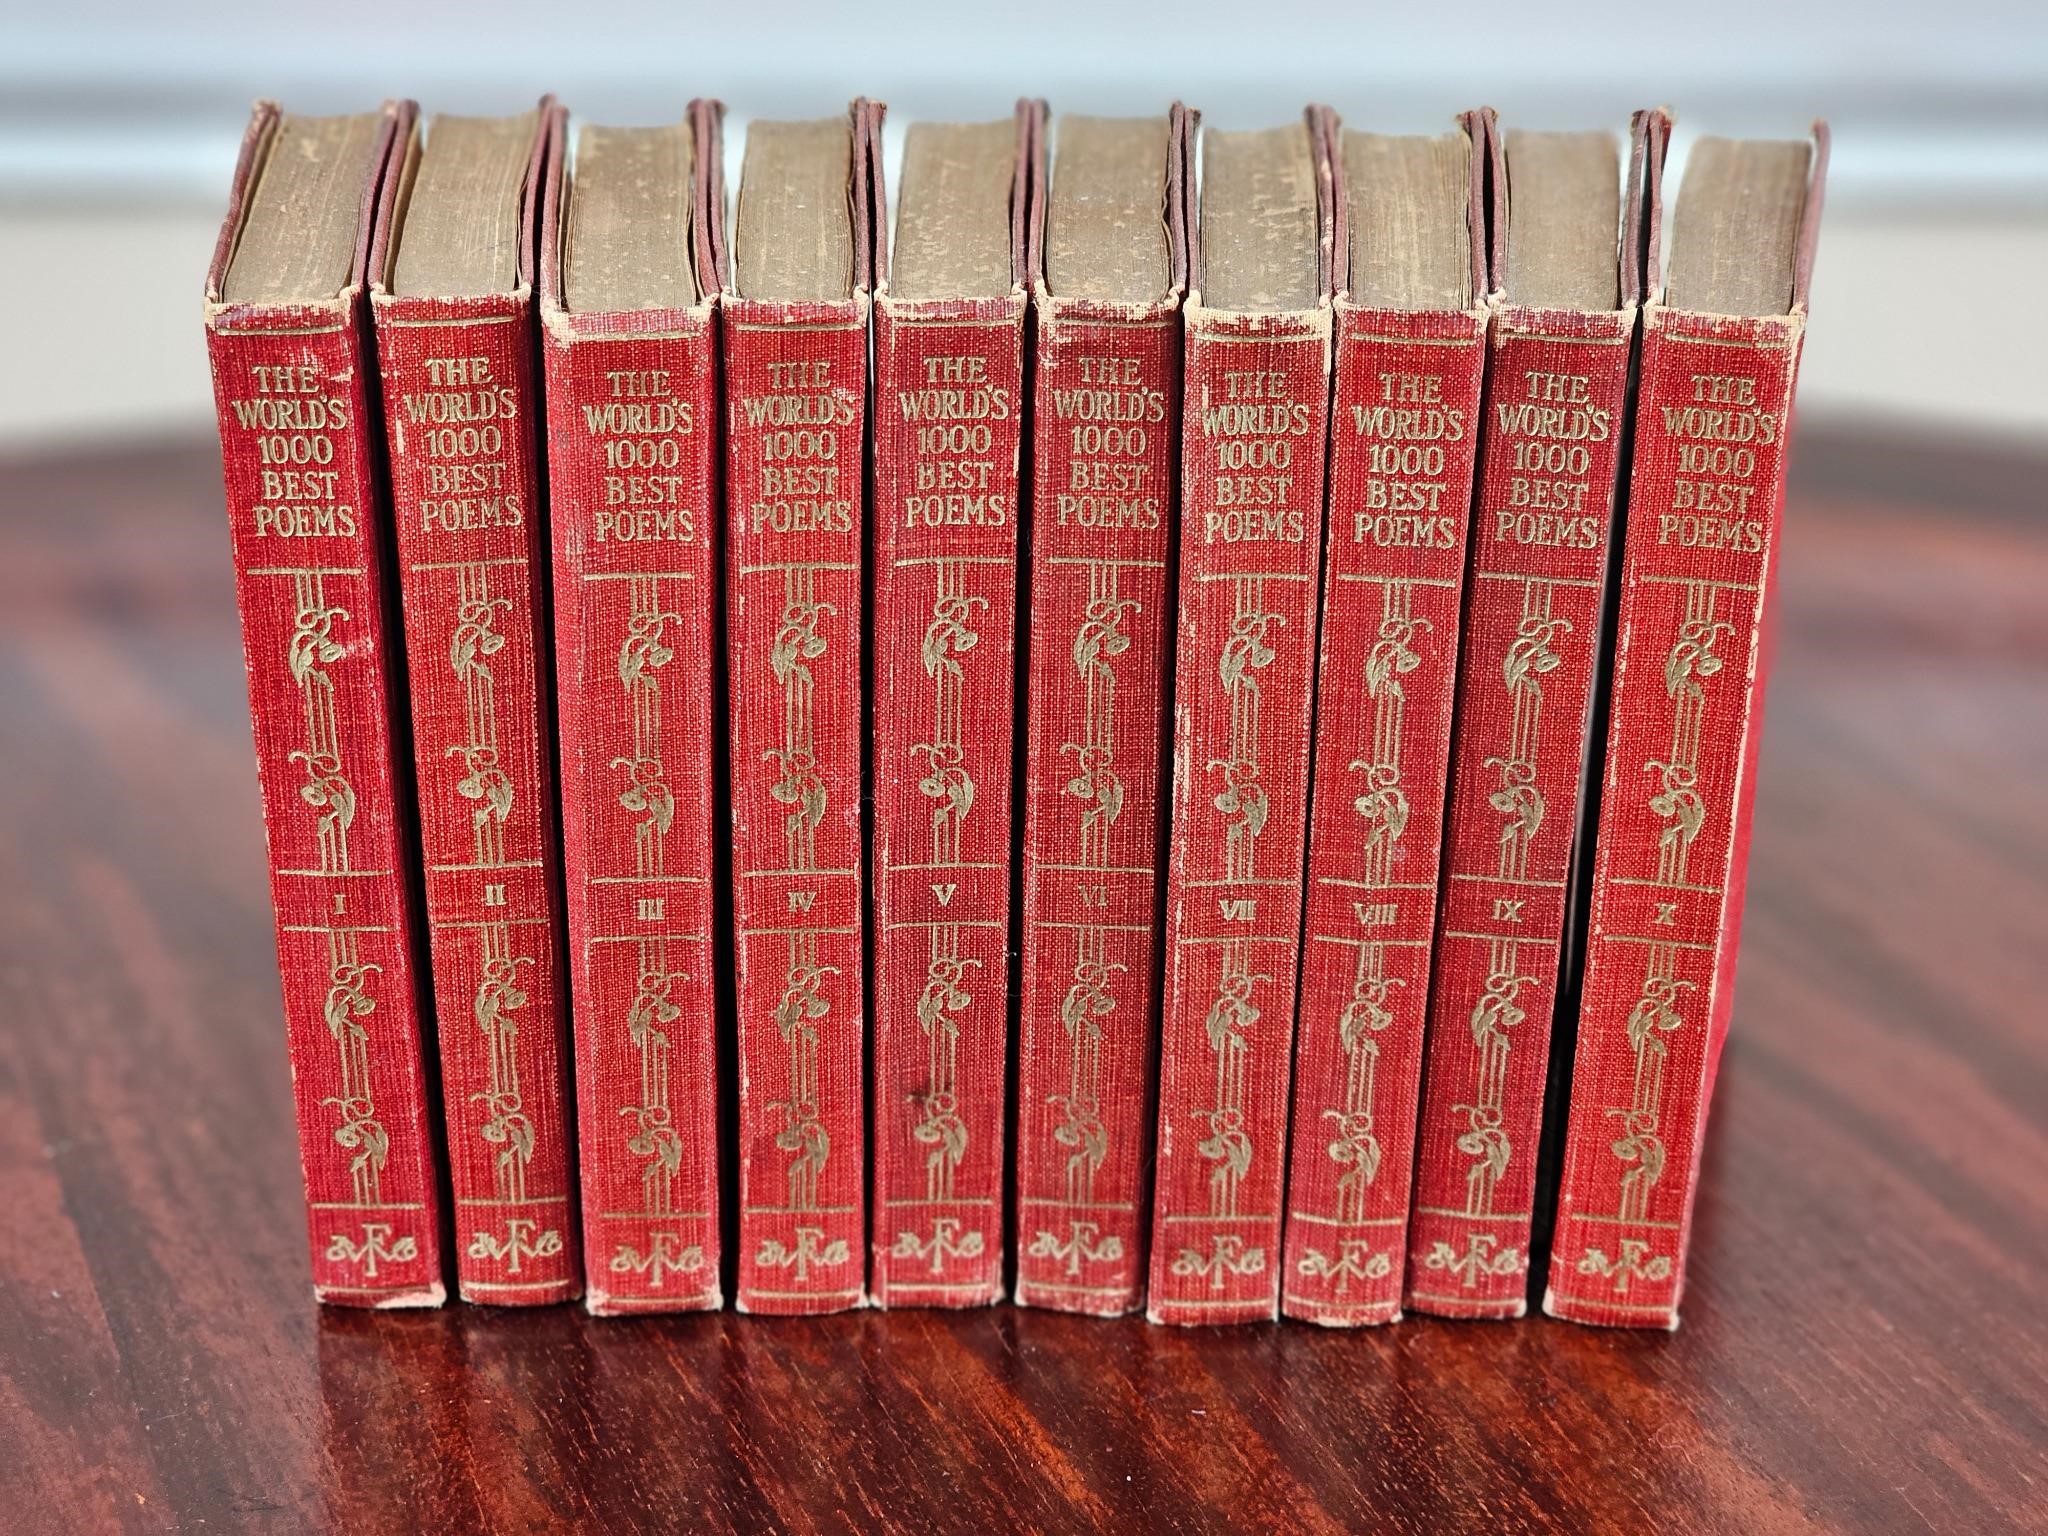 The Worlds 1000 Best Poems 10 Volume set 1929